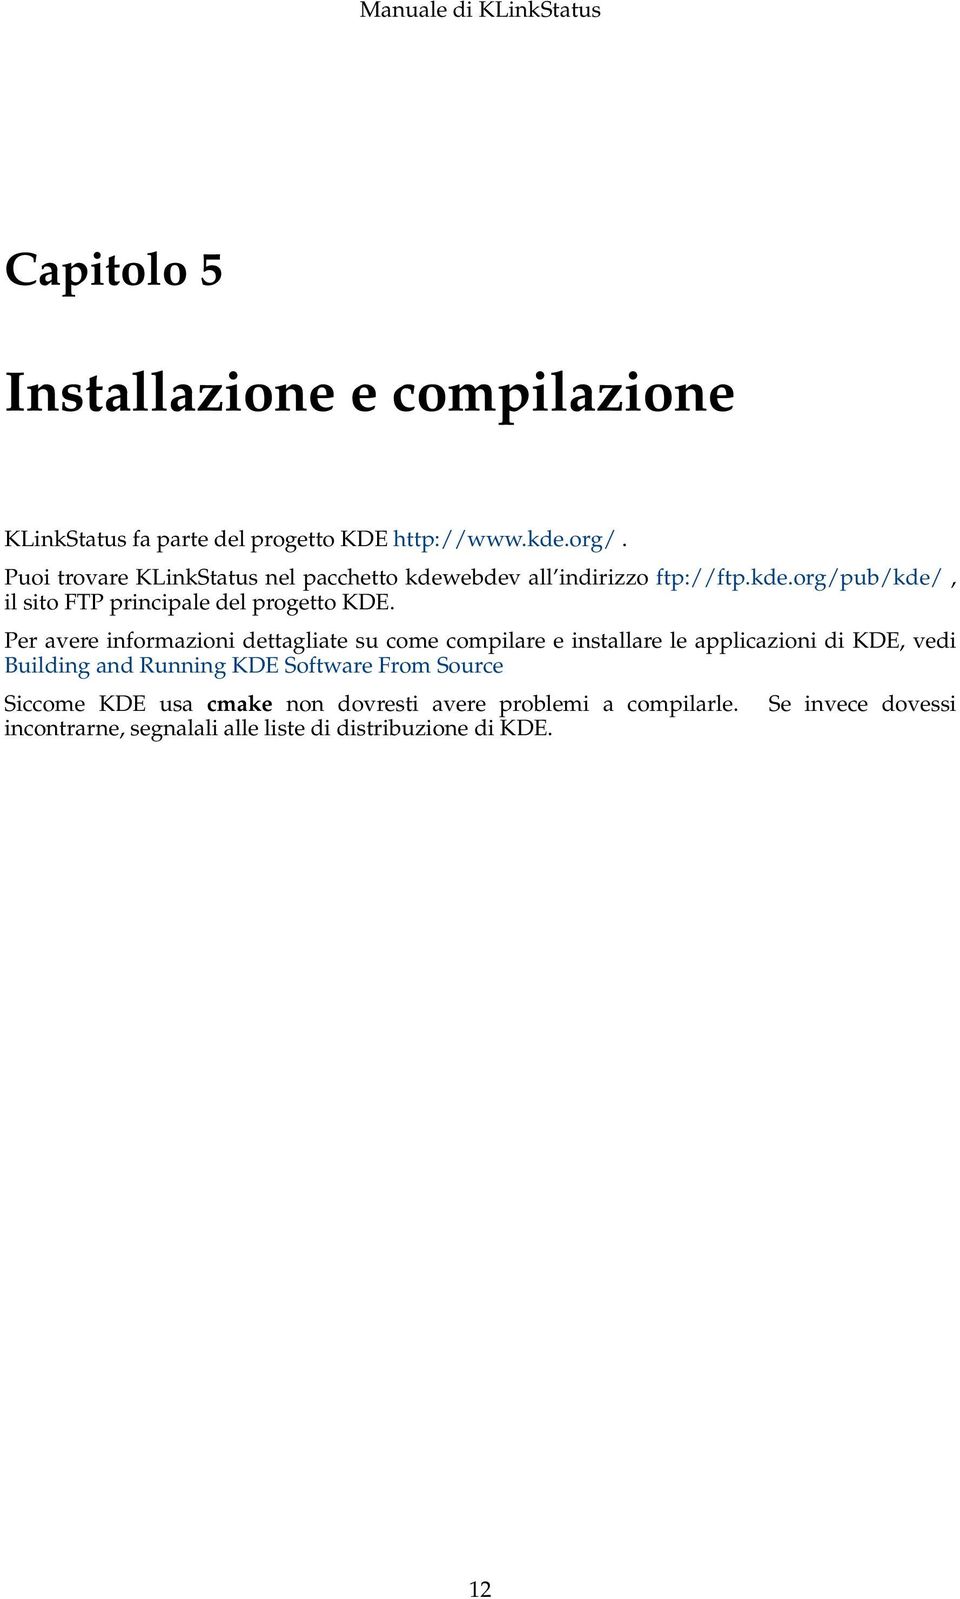 Per avere informazioni dettagliate su come compilare e installare le applicazioni di KDE, vedi Building and Running KDE Software